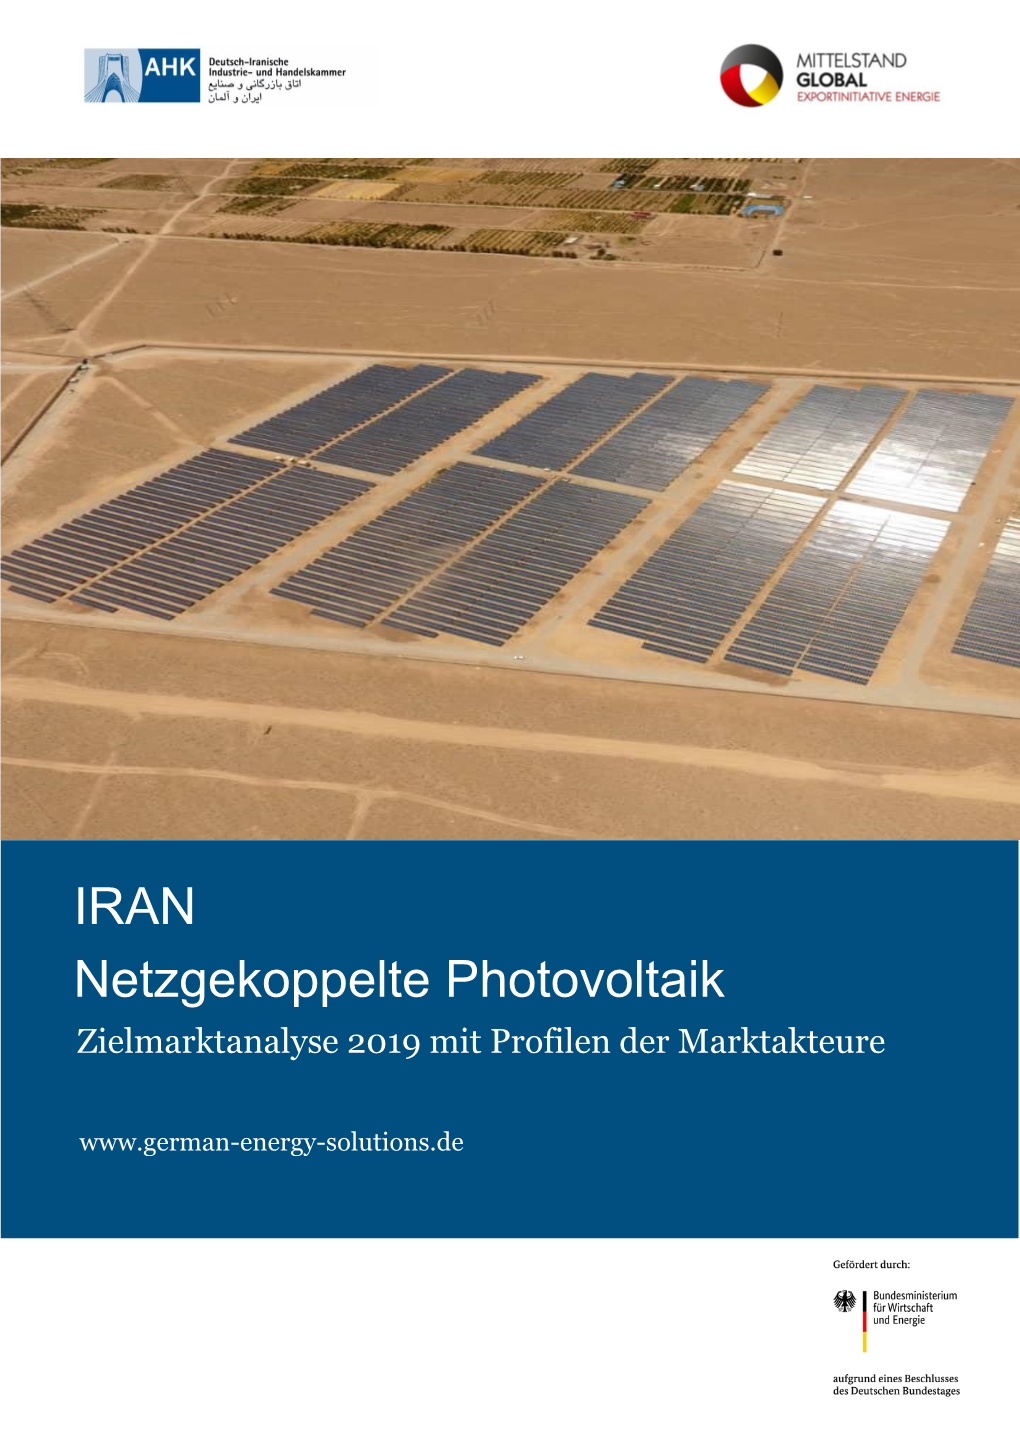 IRAN Netzgekoppelte Photovoltaik Zielmarktanalyse 2019 Mit Profilen Der Marktakteure